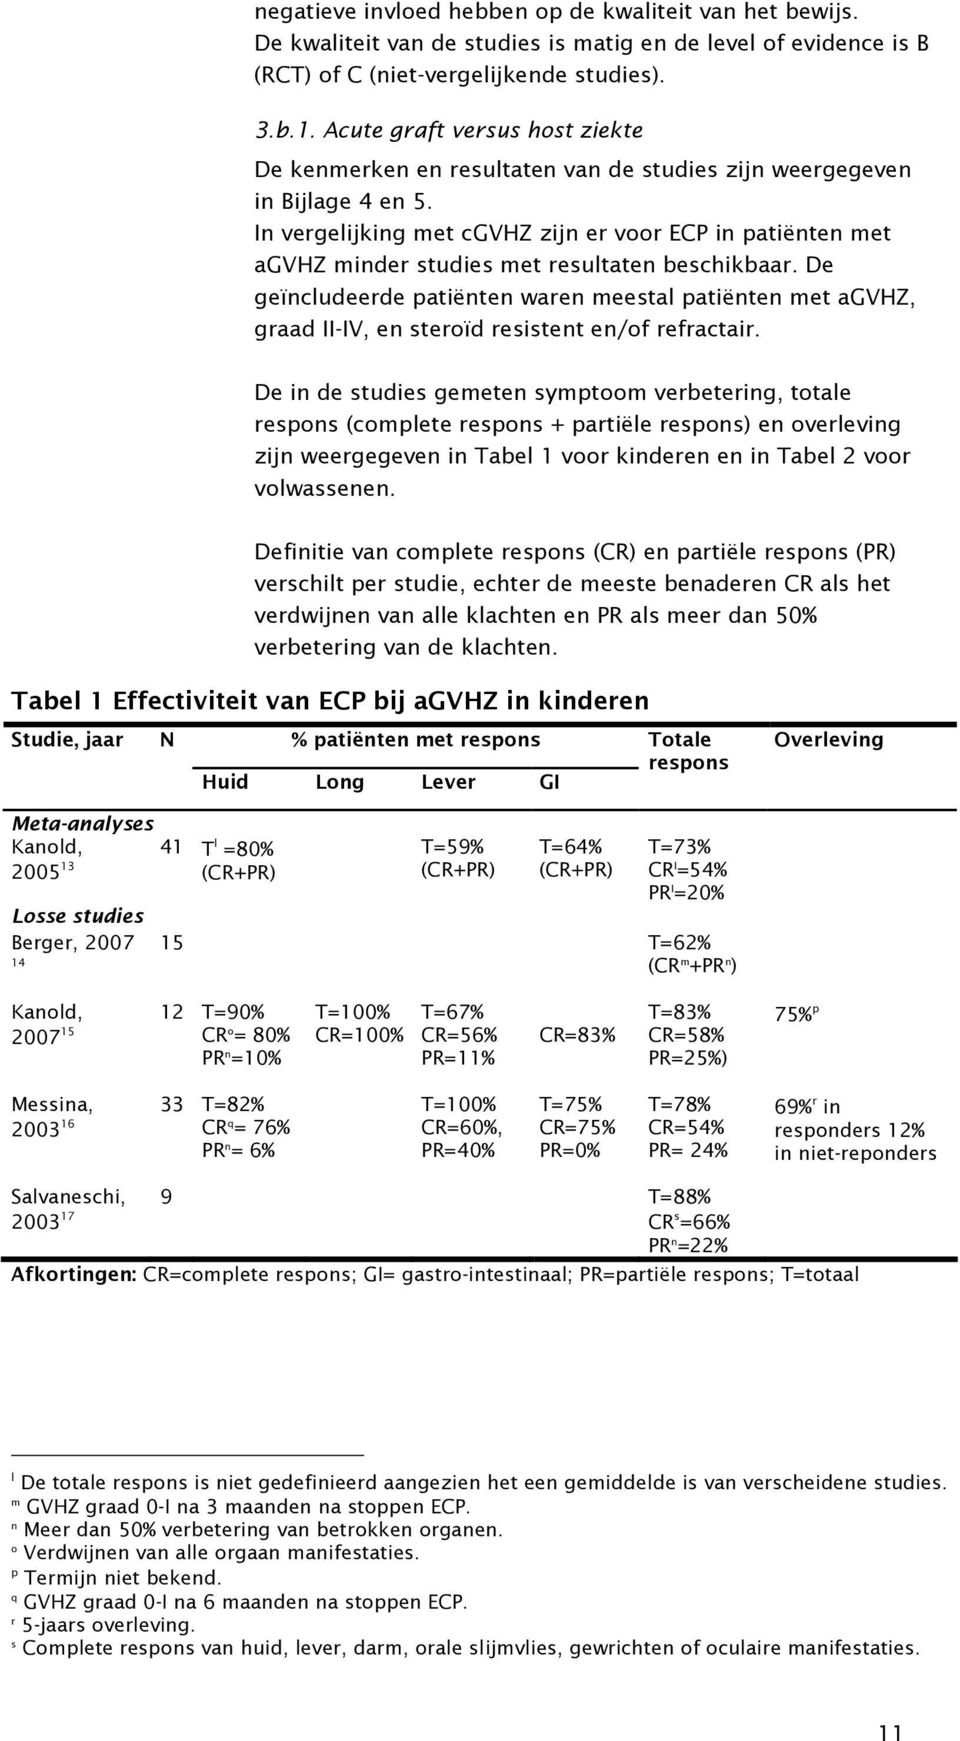 In vergelijking met cgvhz zijn er voor ECP in patiënten met agvhz minder studies met resultaten beschikbaar.